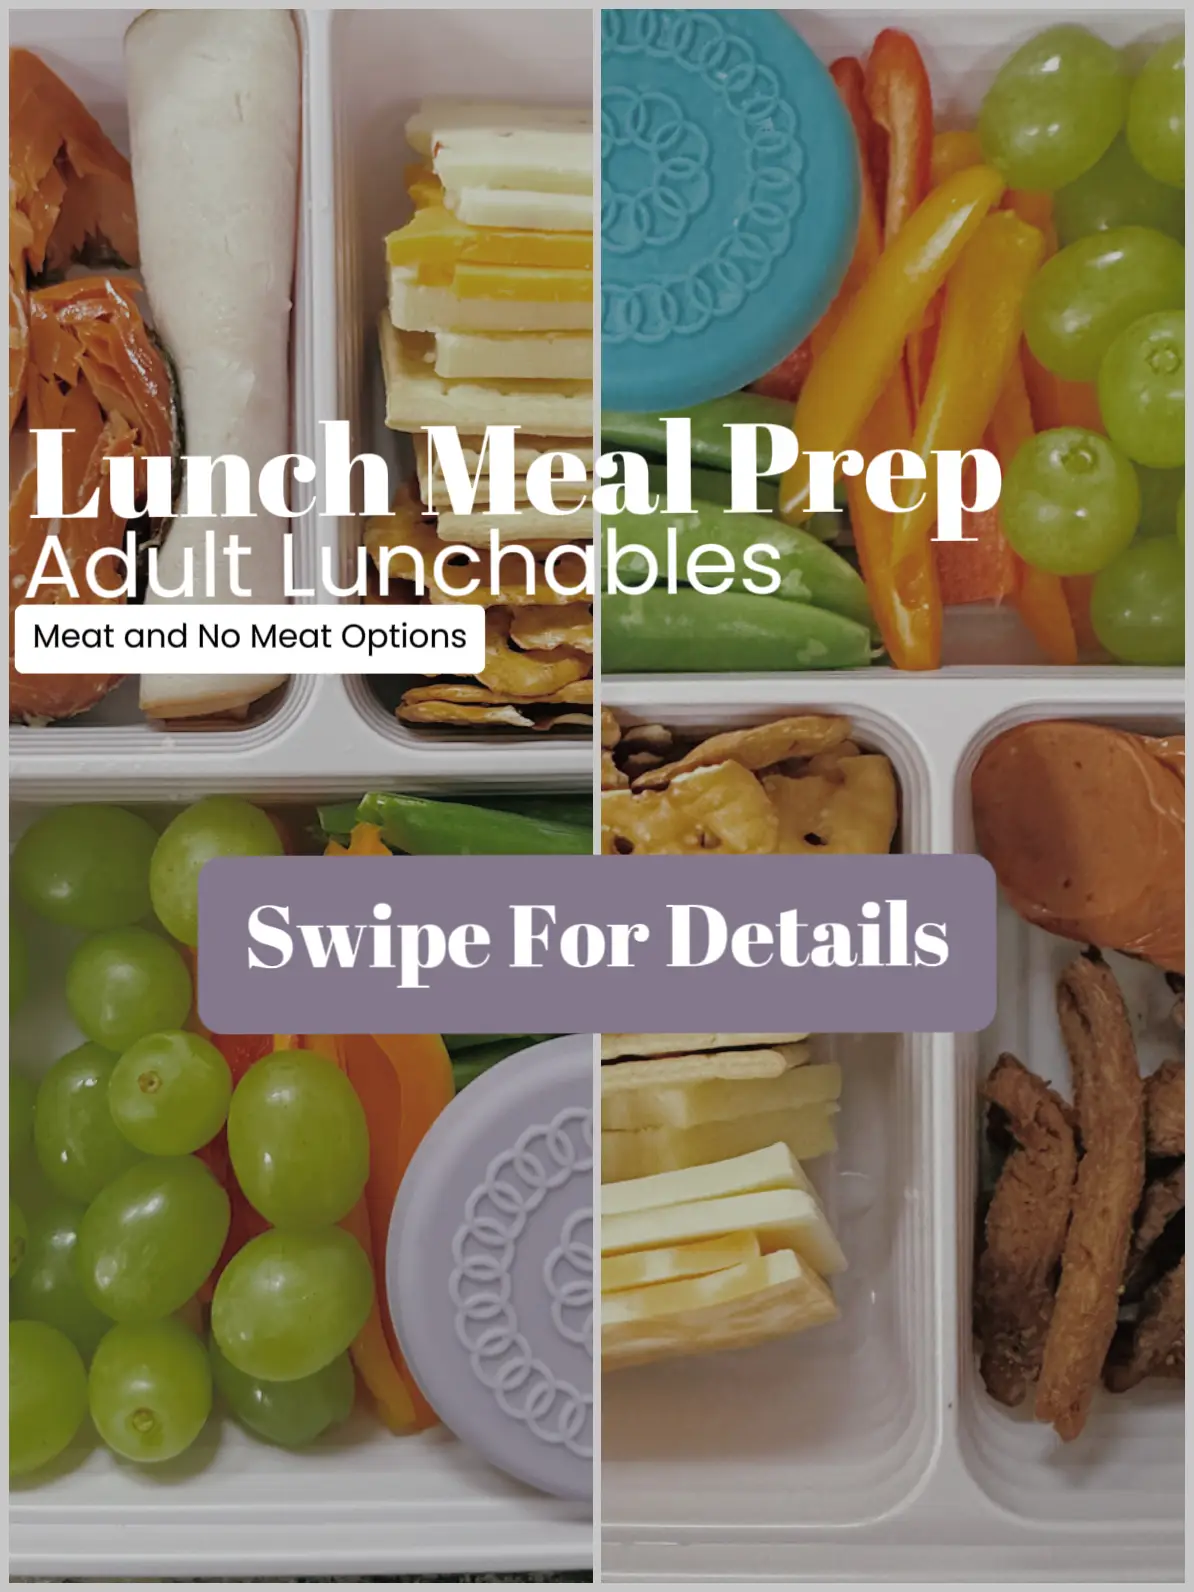 I love the idea of adult lunchables 😋 #healthylunchideas #mealprep #h